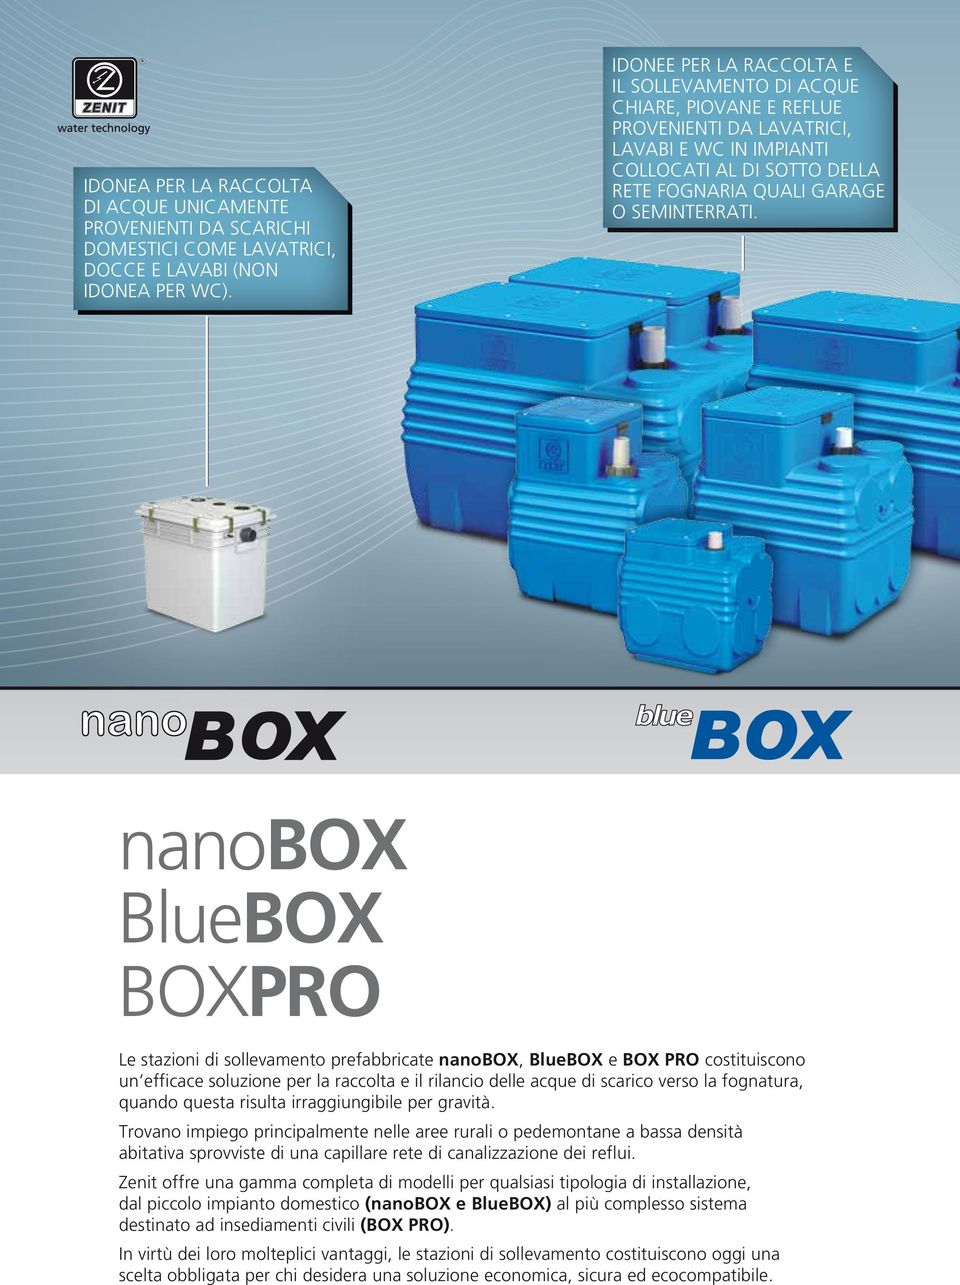 nanobox Bluebox BOXPRO Le stazioni di sollevamento prefabbricate nanobox, BlueBOX e BOX PRO costituiscono un efficace soluzione per la raccolta e il rilancio delle acque di scarico verso la